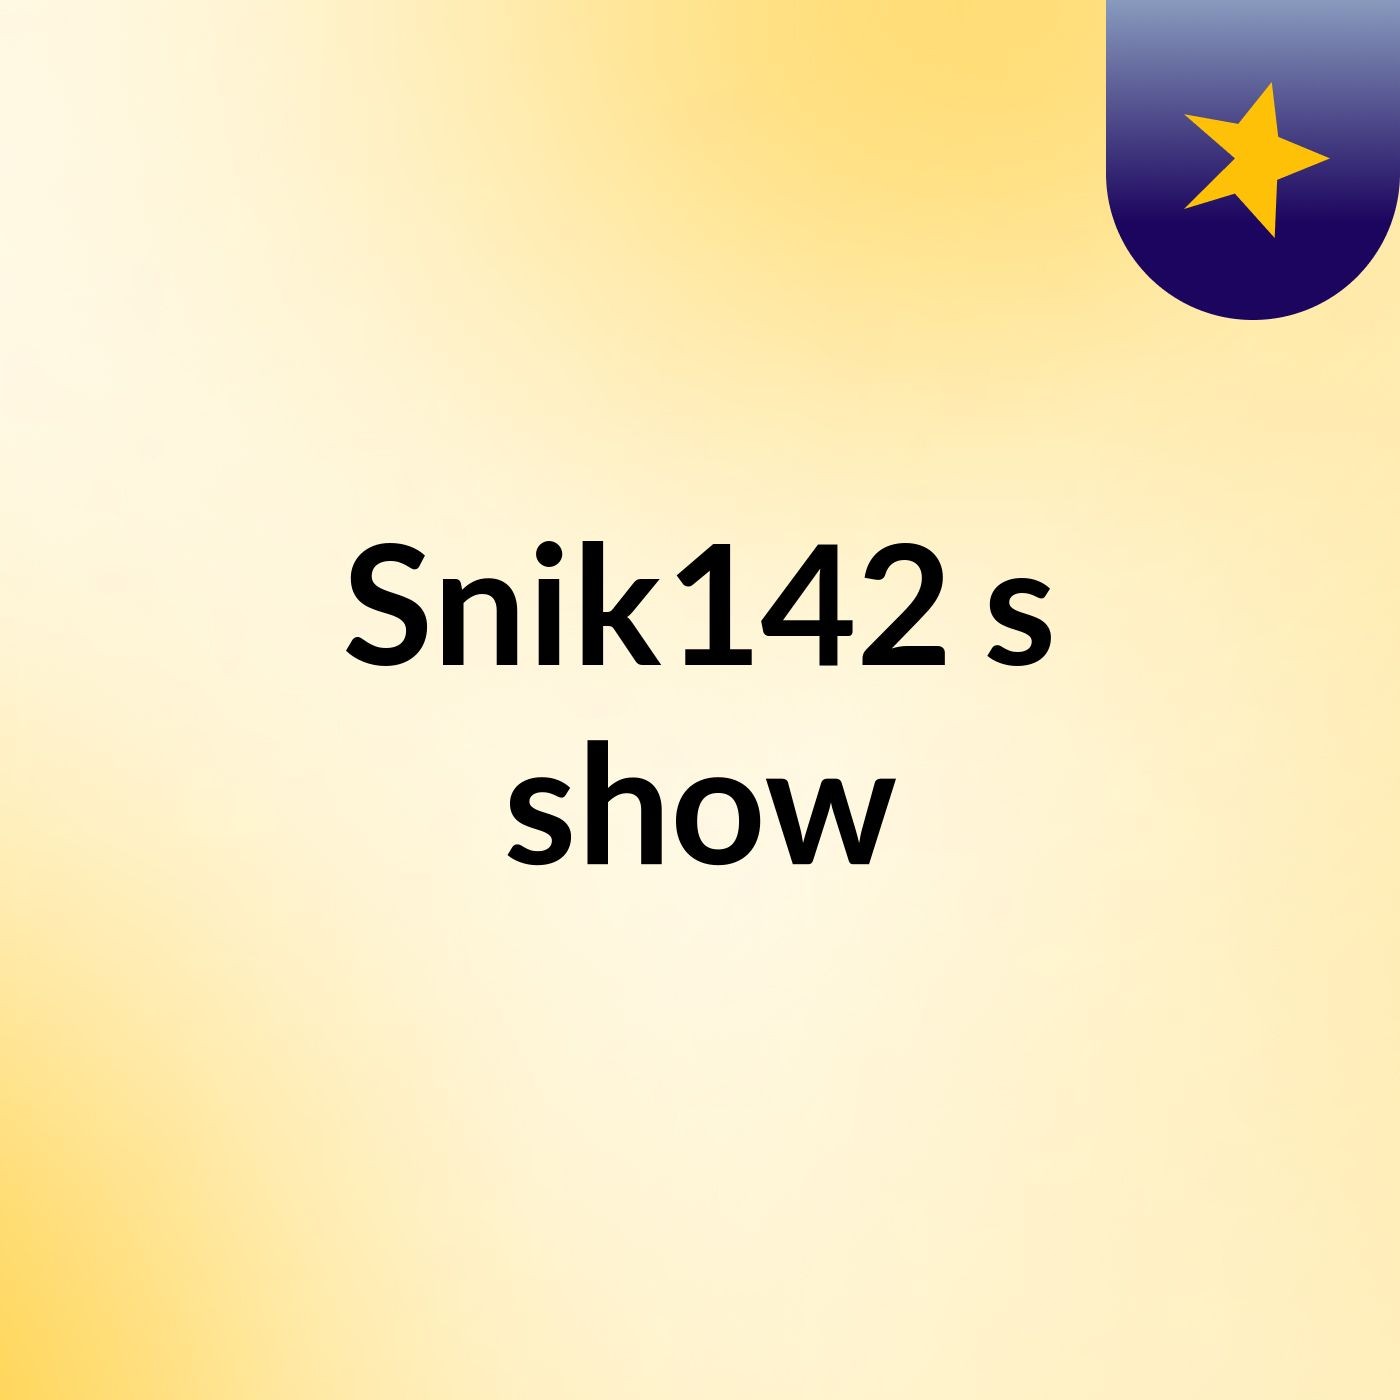 Snik142's show